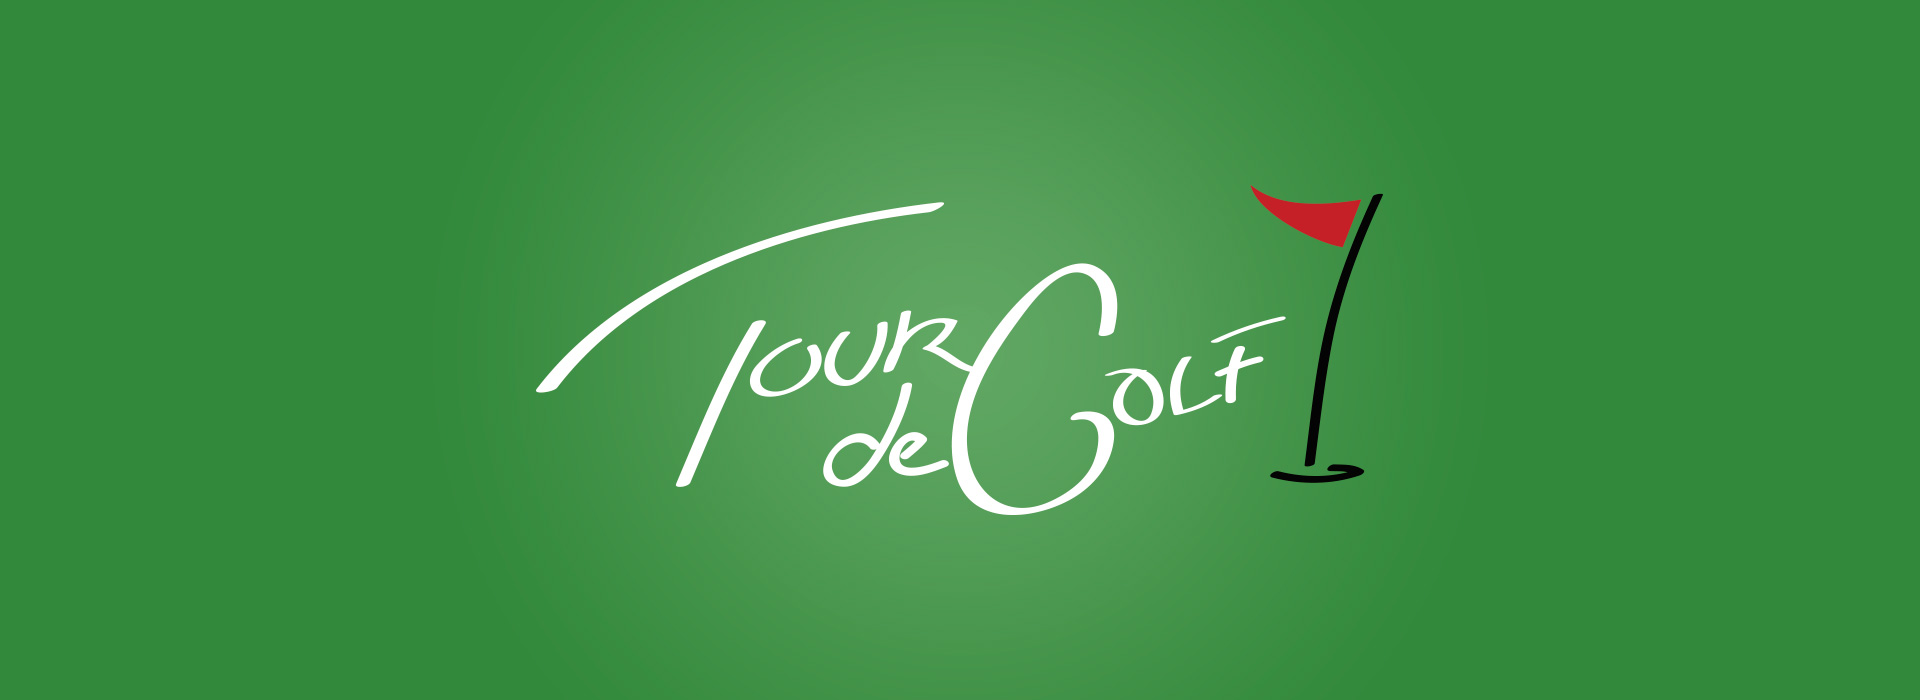 Tour de Golf logo